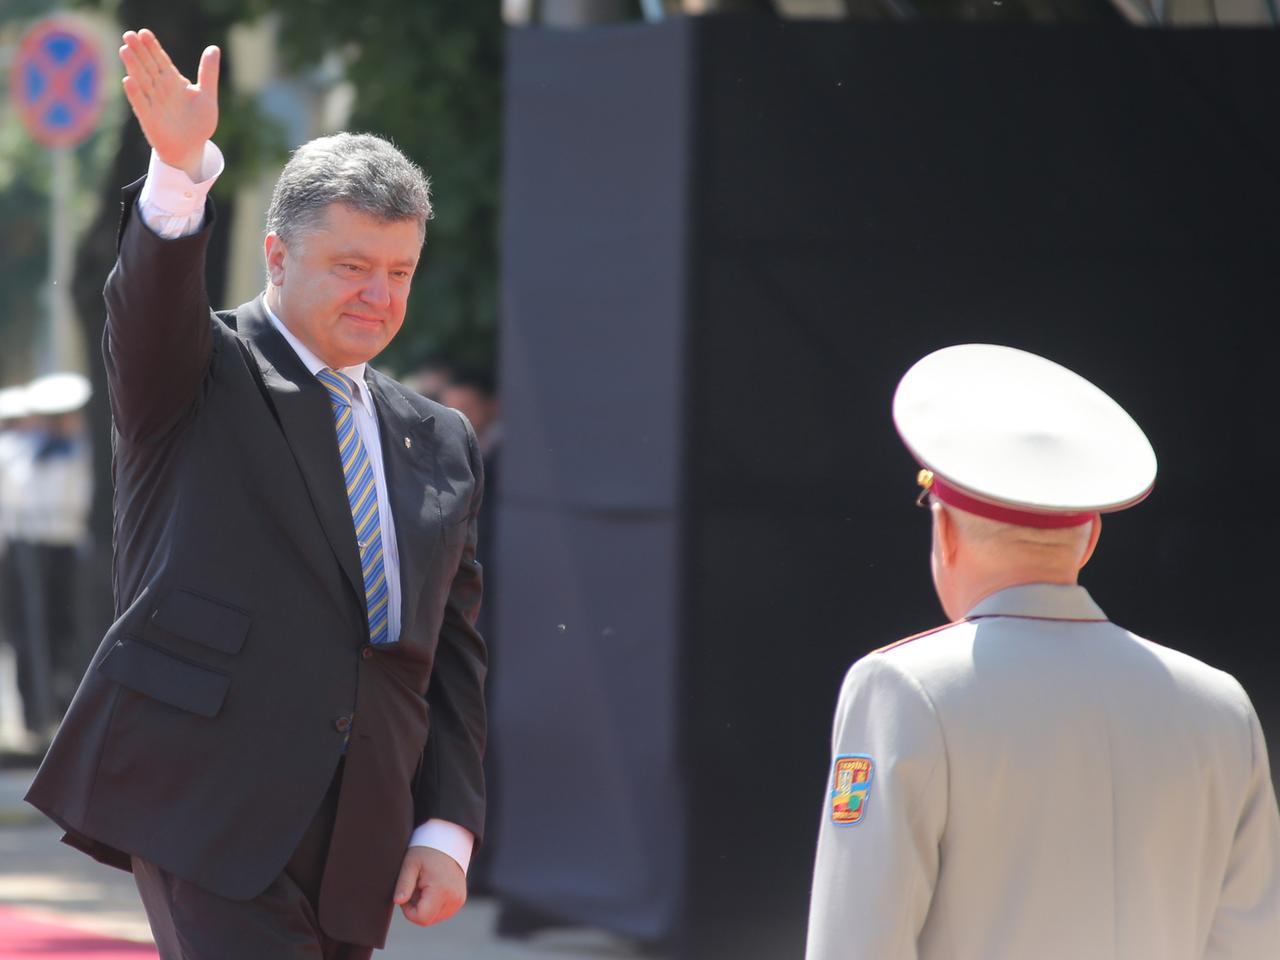 Der neue ukrainische Präsident Petro Poroschenko winkt in Richtung Kamera.